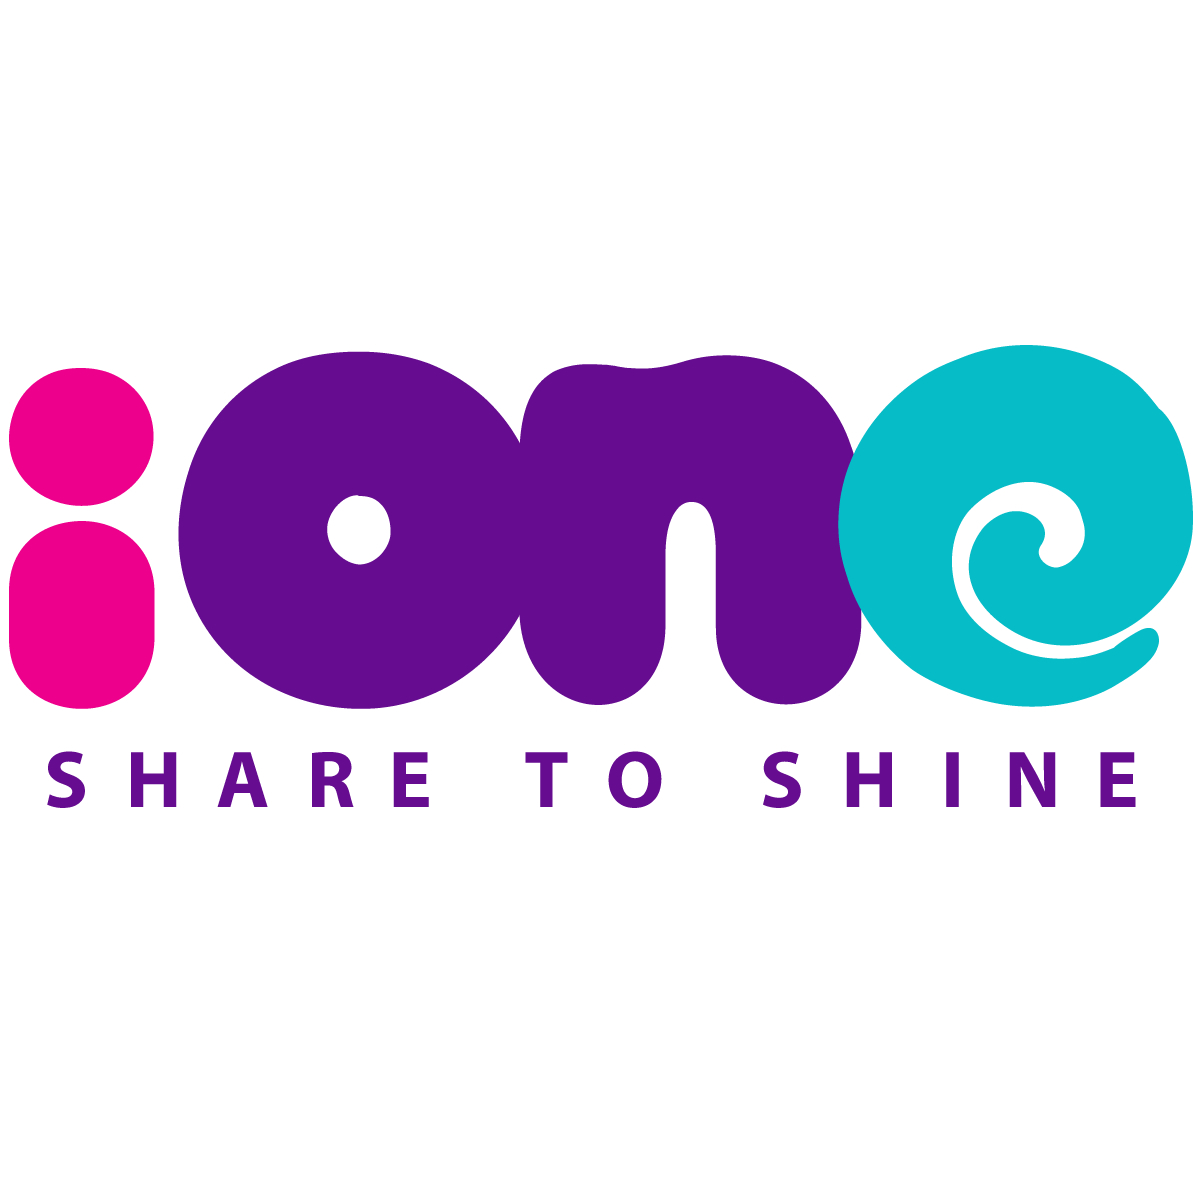 Ione là kênh thông tin dành cho giới trẻ của VnExpress